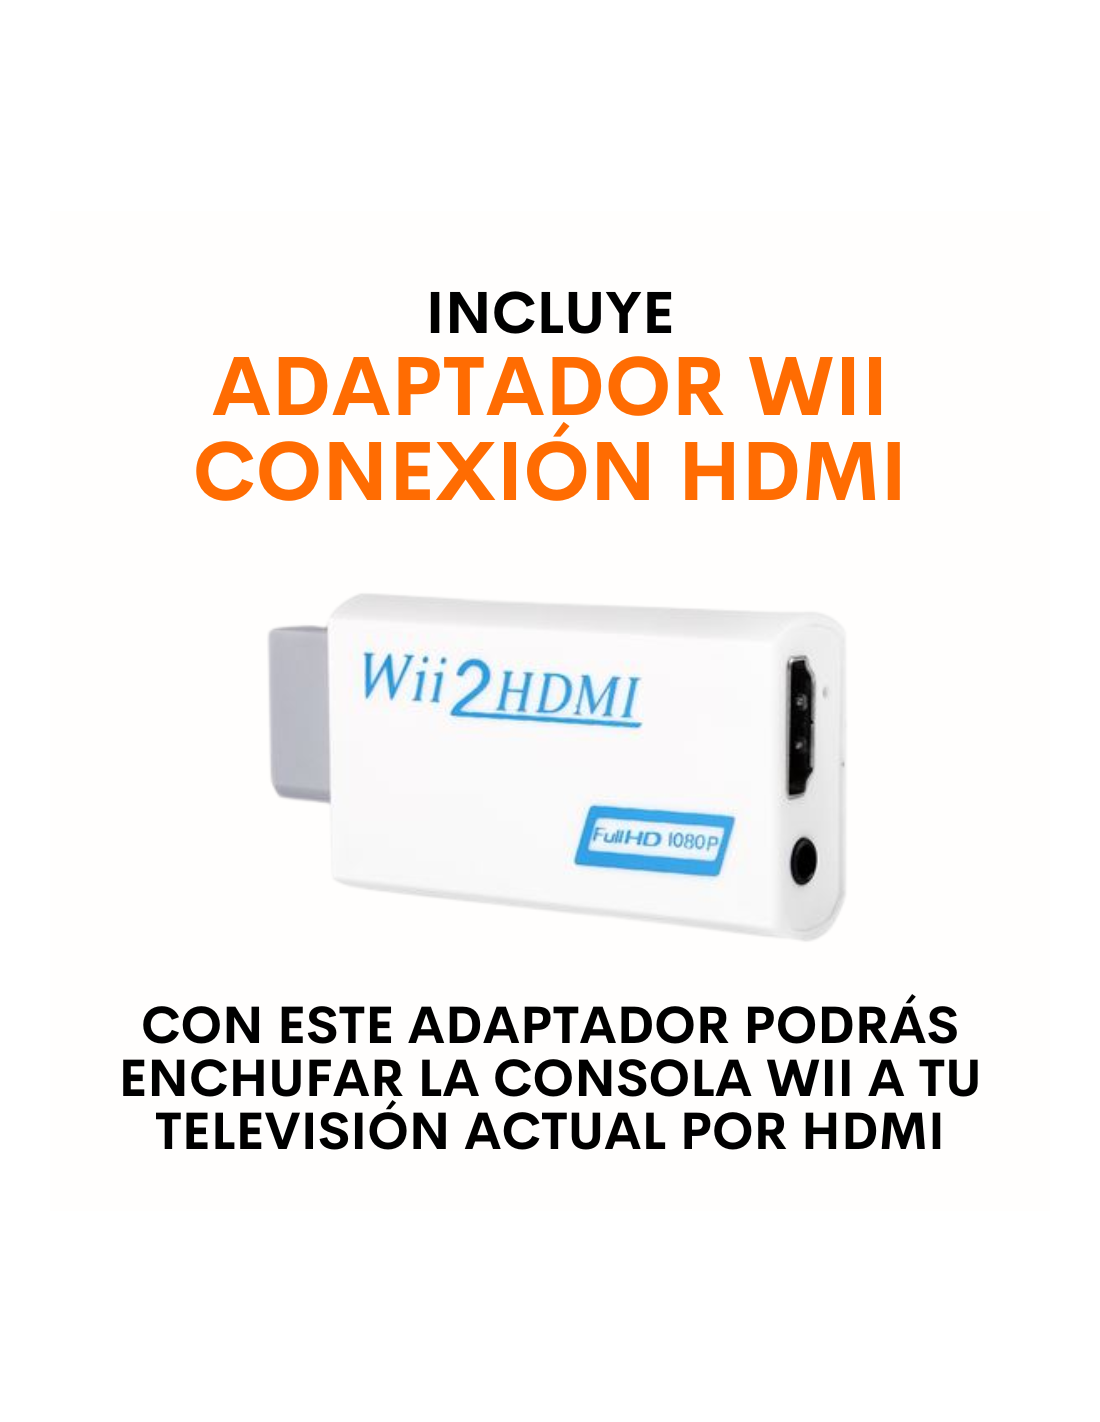 Wii de Segunda Mano - Consola Wii + Mando Nuevo + Adaptador HDMI +